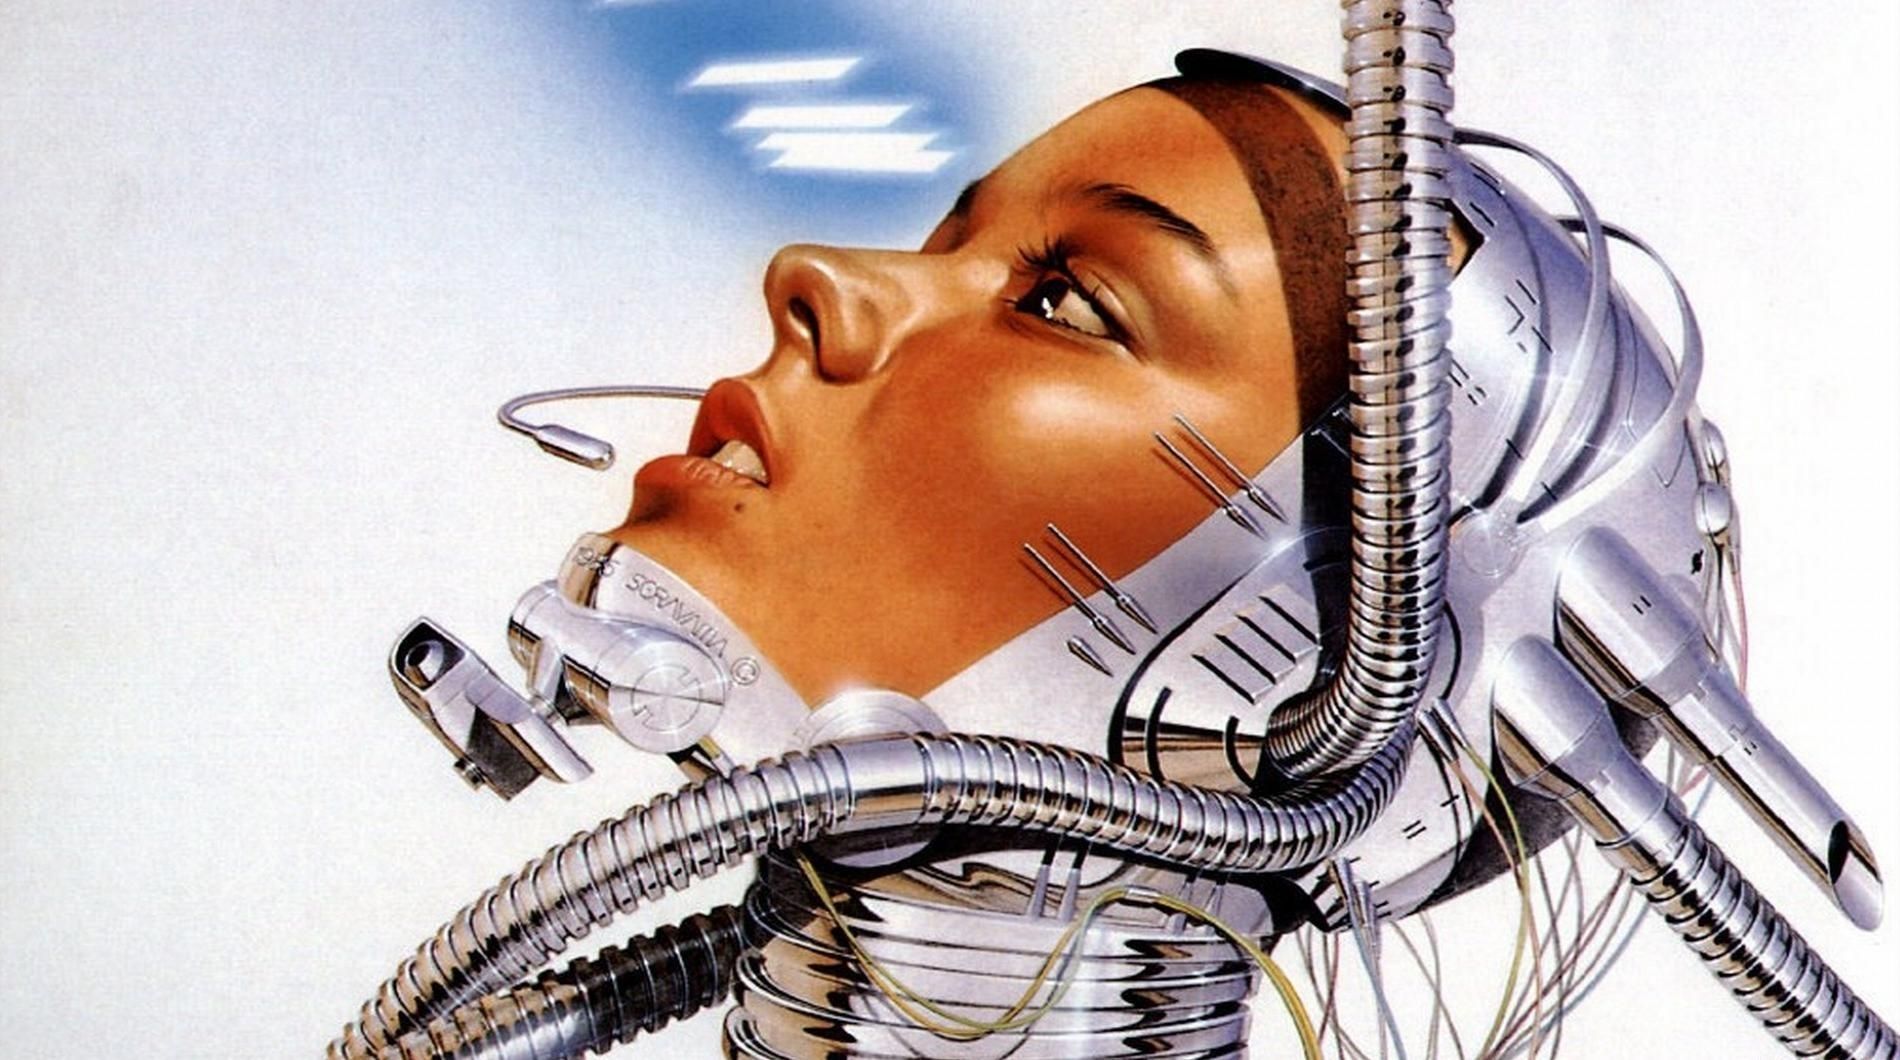 Cyborg robot girl face wires sci fi science mech tech face women robot wallpaperx1060